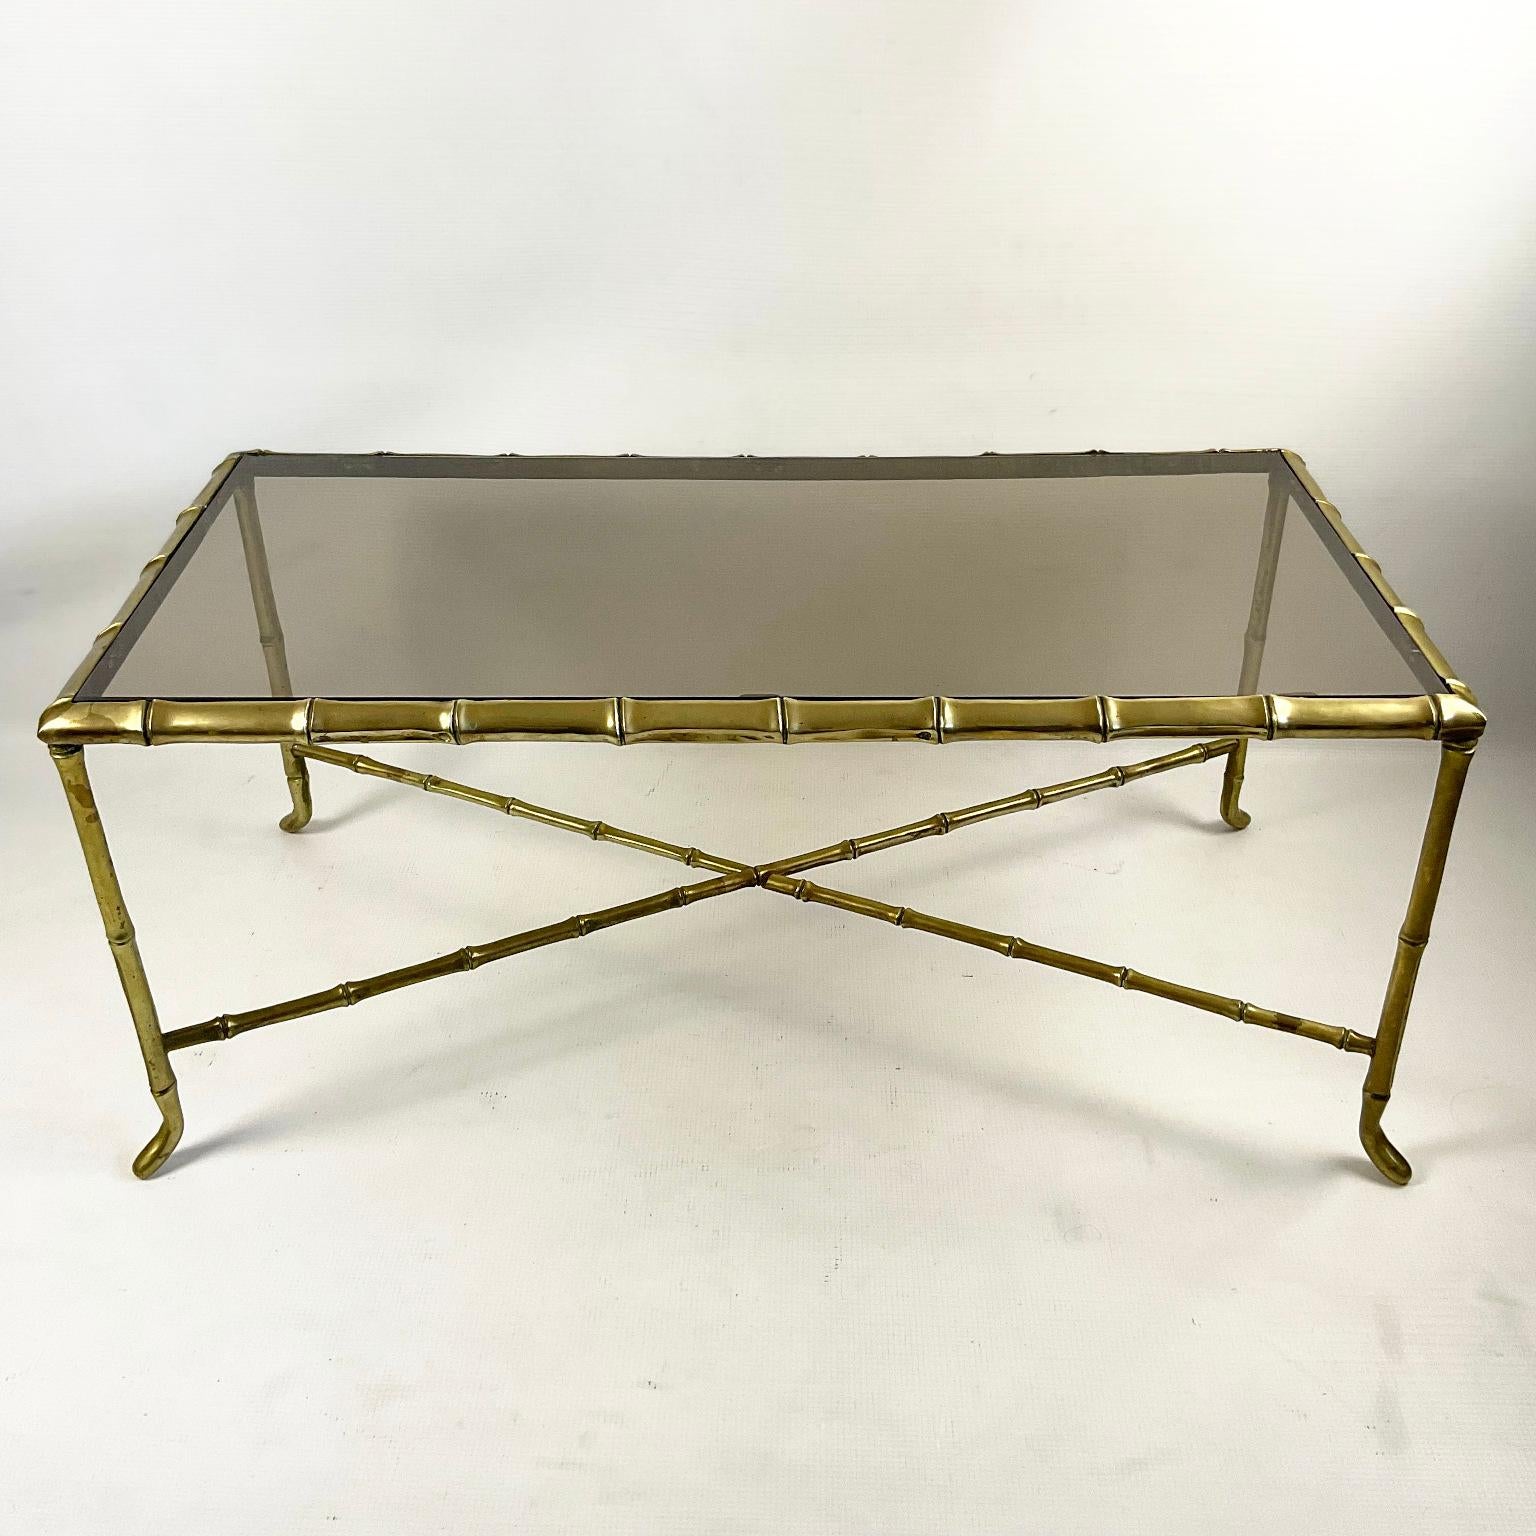 Cette table basse de la fin des années 1940 est attribuée à la Maison Baguès. Le cadre en Faux Bambou de cette table basse est en bronze de qualité avec un plateau en verre de sécurité cognac flambant neuf.

